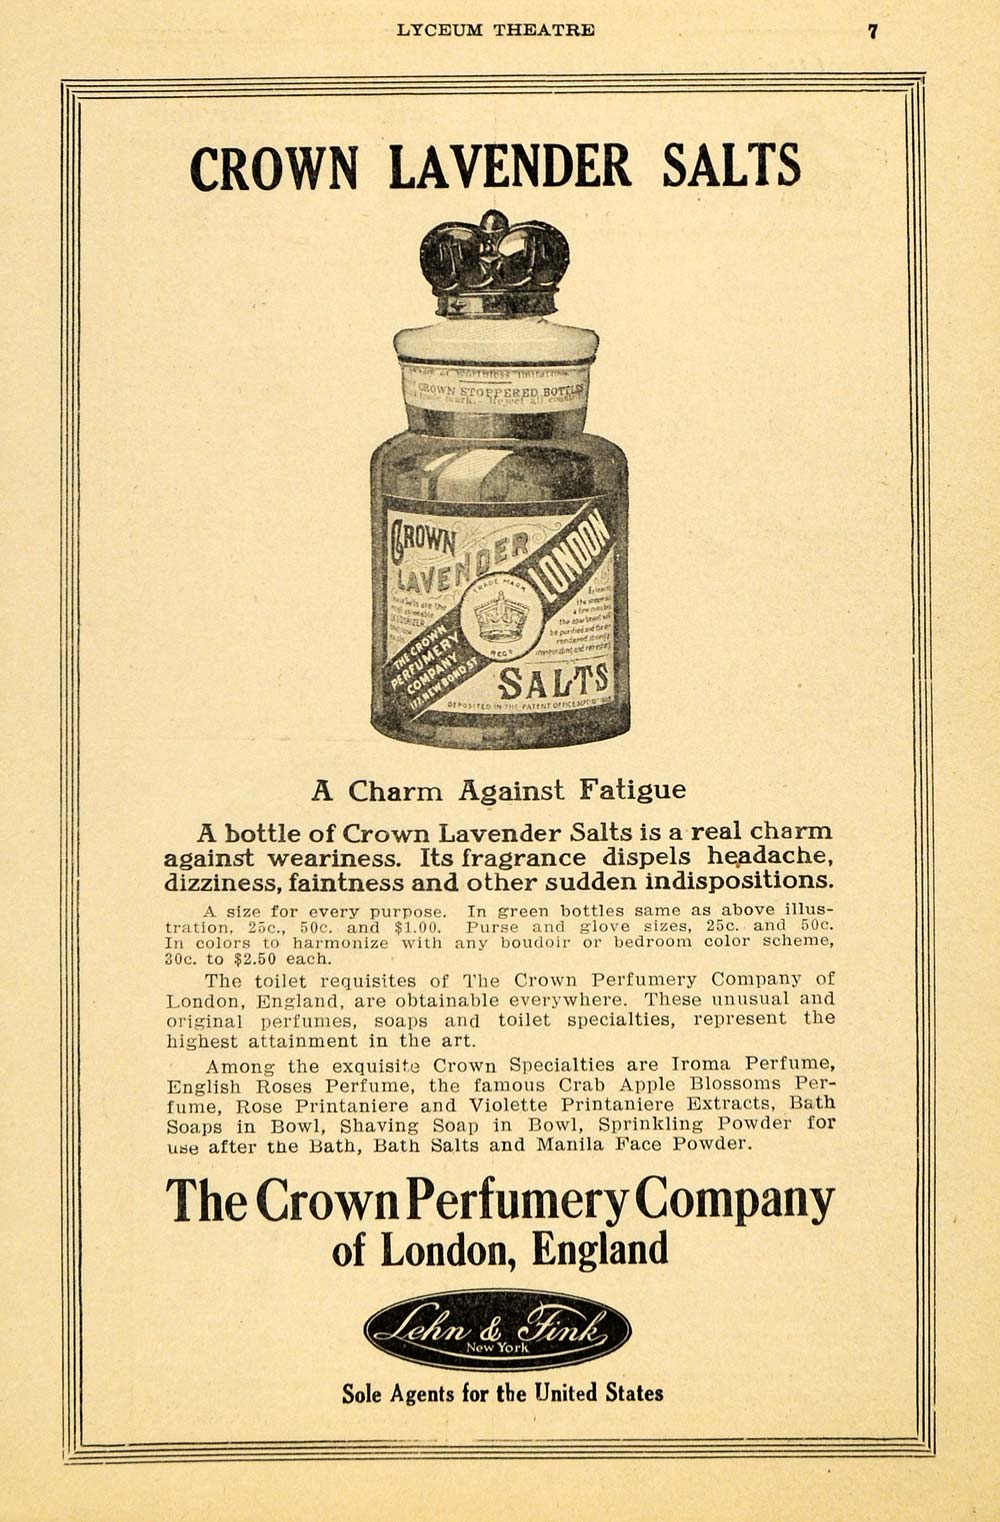 1915 Ad Crown Lavender Salts Perfume Fatigue Headache - ORIGINAL THR1